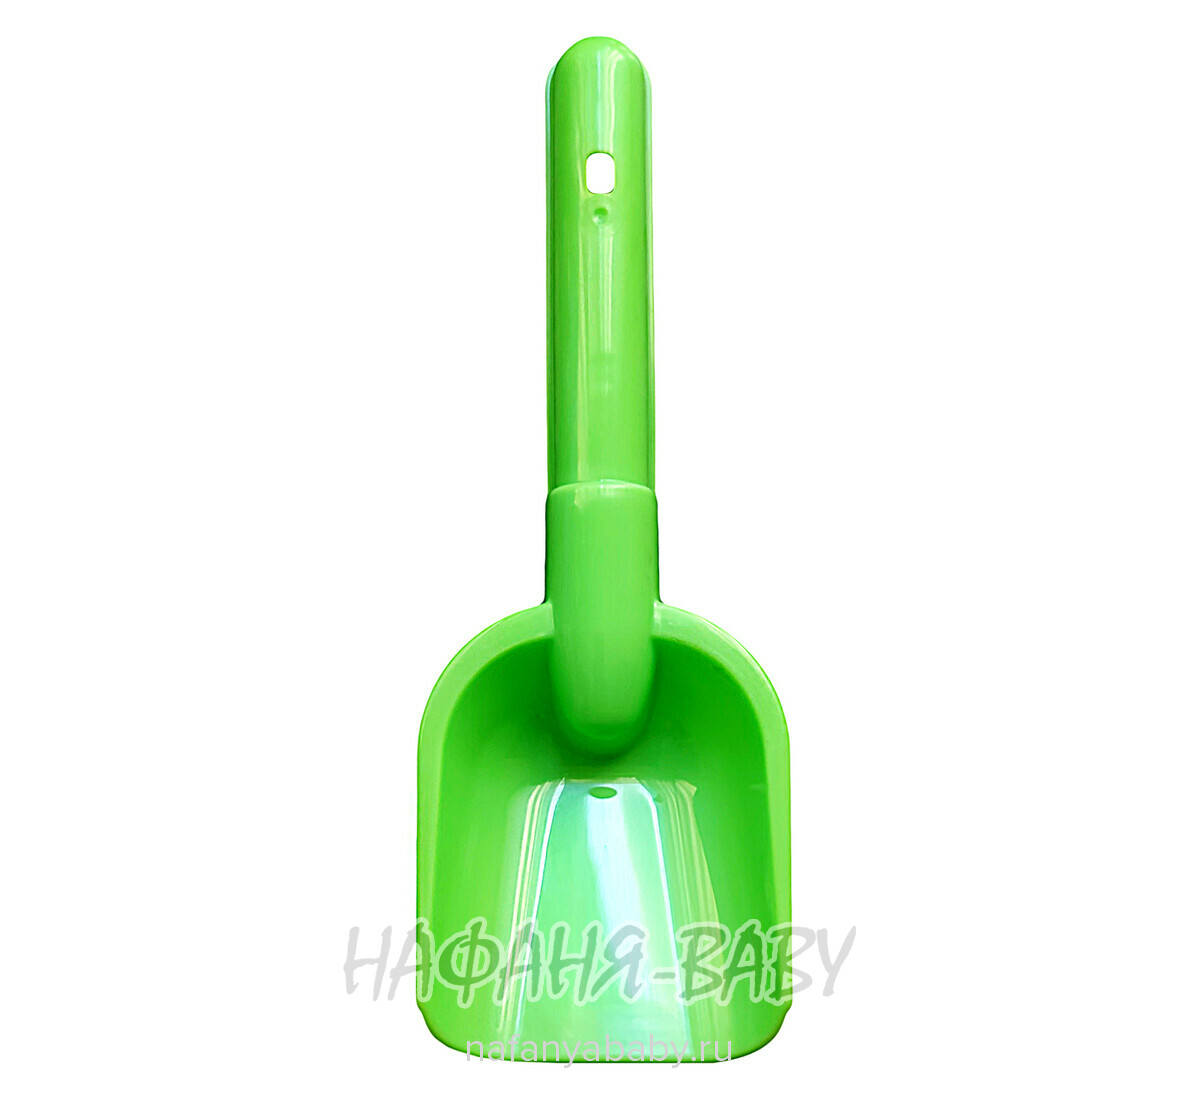 Детская лопатка Стеллар (Ростов-на-Дону) арт: 01228, купить в интернет магазине Нафаня, цвет зеленый